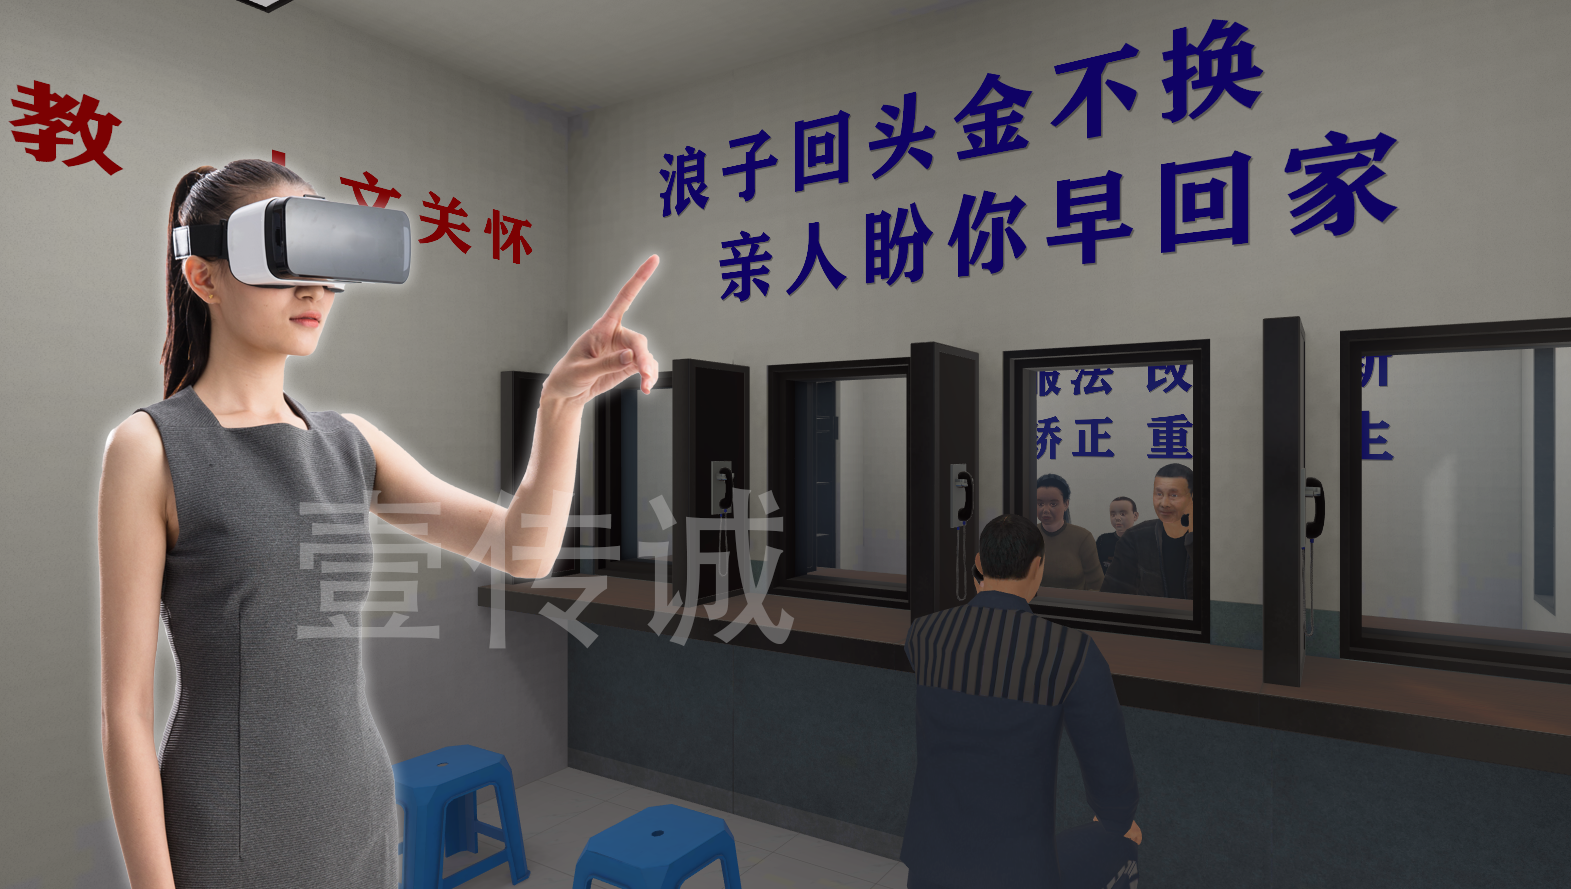 VR监狱模拟,VR青少年法治,VR监狱体验